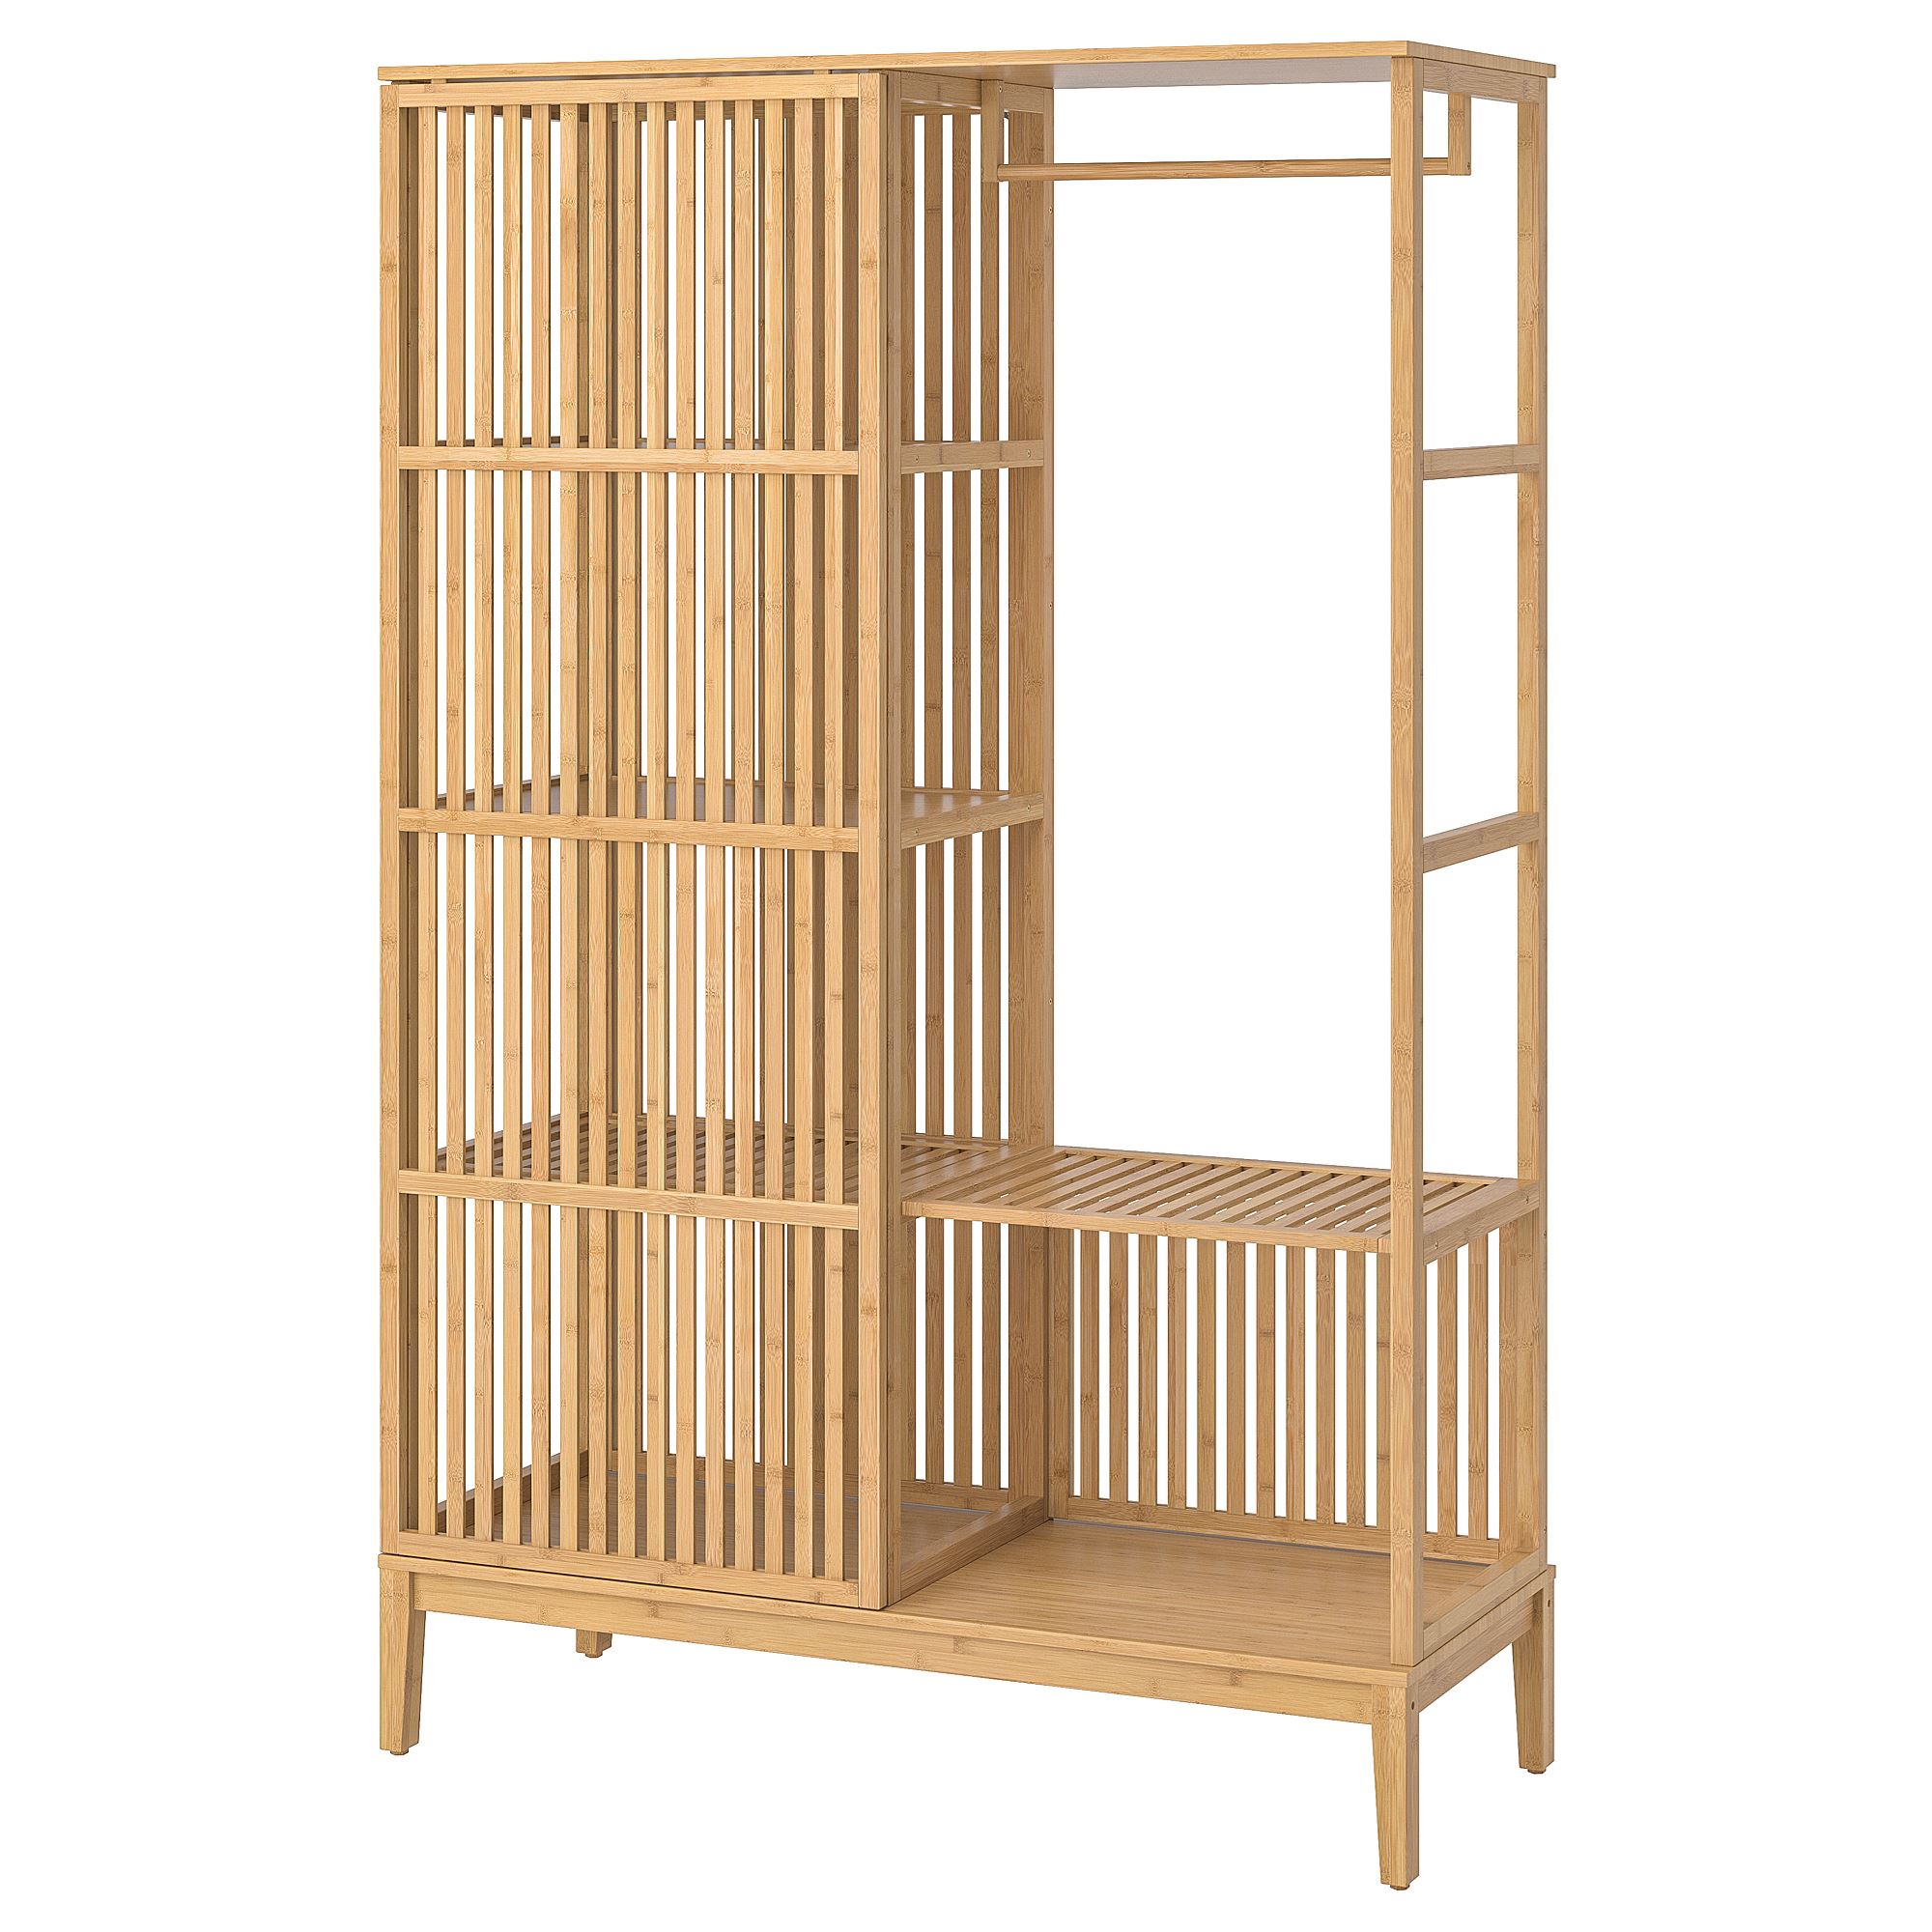 NORDKISA bambu 120x186 cm açık gardırop  IKEA